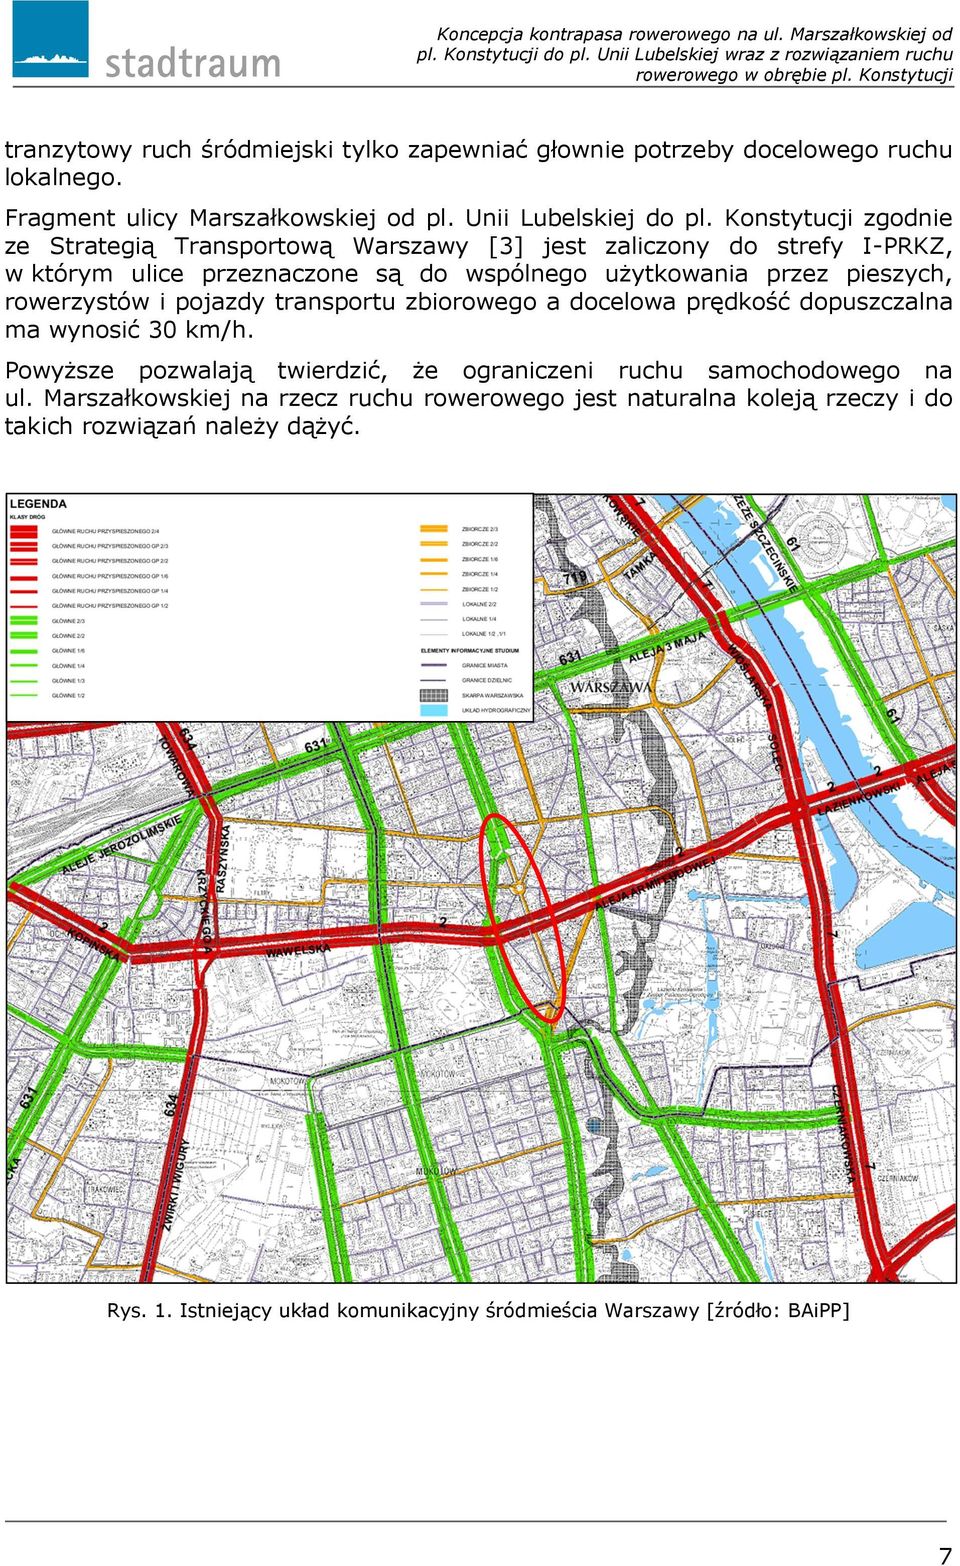 Konstytucji zgodnie ze Strategią Transportową Warszawy [3] jest zaliczony do strefy I-PRKZ, w którym ulice przeznaczone są do wspólnego użytkowania przez pieszych, rowerzystów i